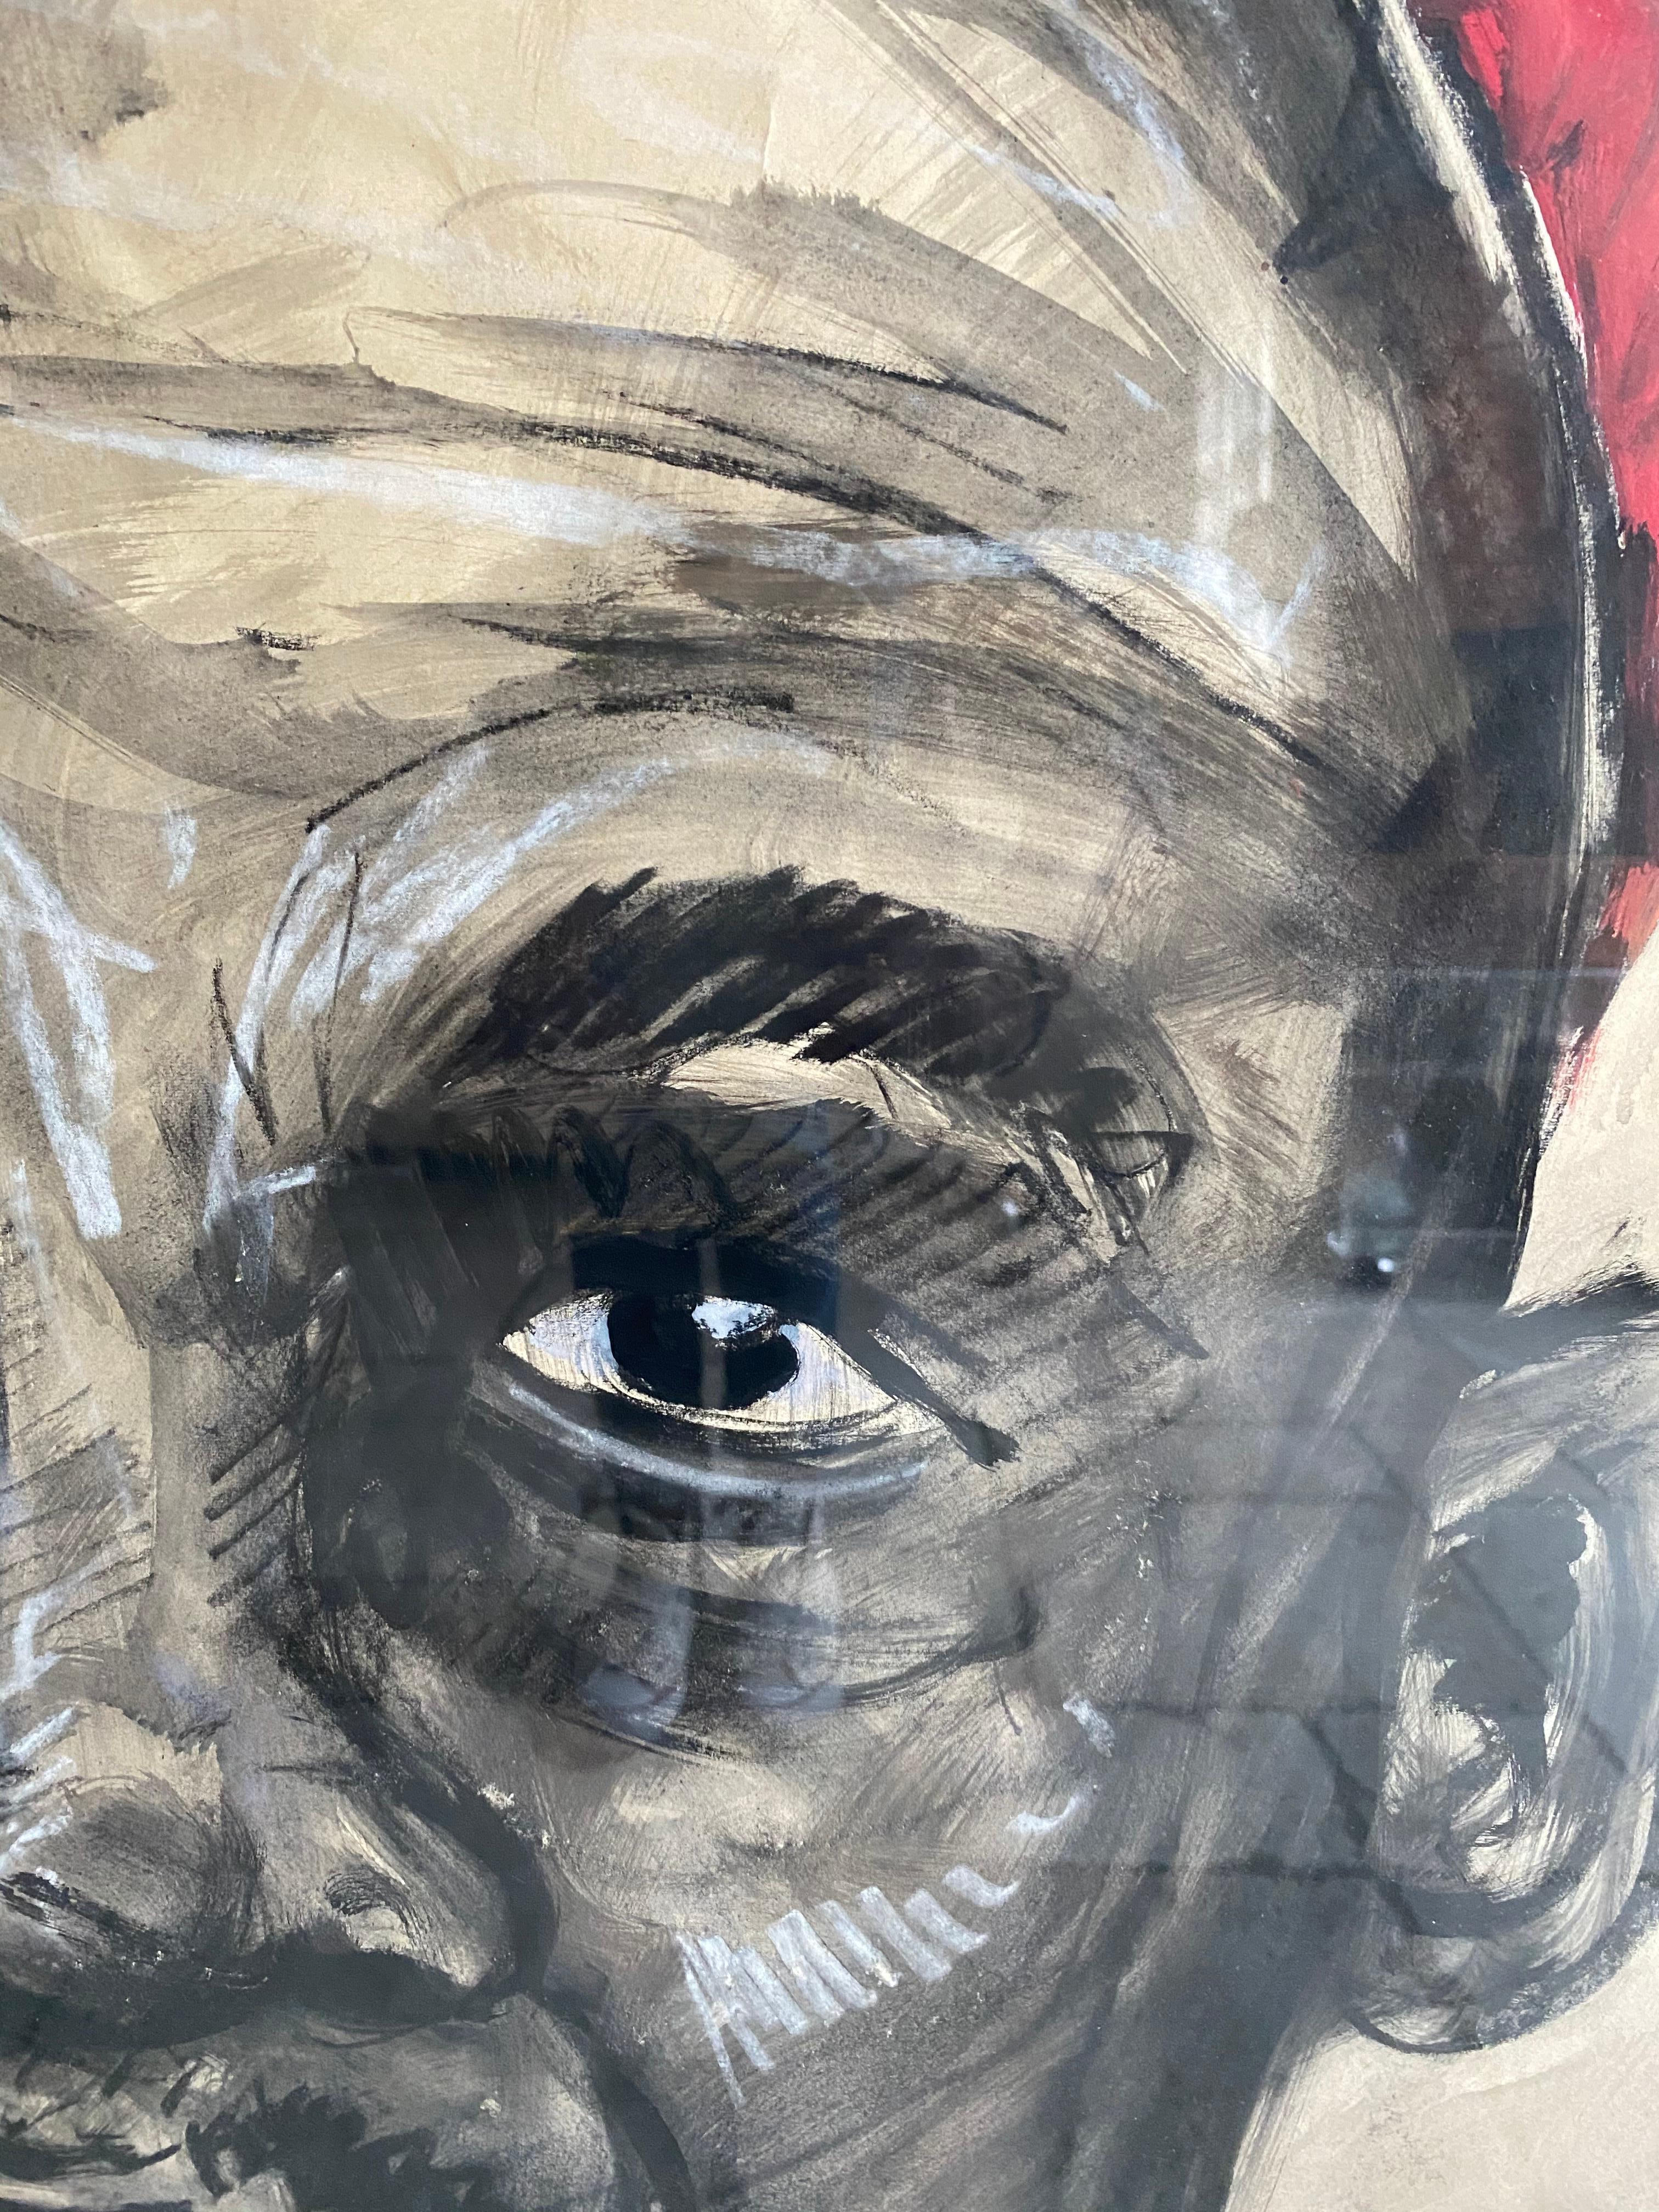 Gouache- und Kohlezeichnung von Jean Poulain 1939

Rahmen aus Eichenholz 
Maße des Rahmens inklusive: 115 x 80 cm 
Größe des Werks: 95 x 68 cm
Biographie 
Jean Poulain war ein belgischer Künstler, der 1884 in Katanga (früher Belgisch-Kongo) geboren